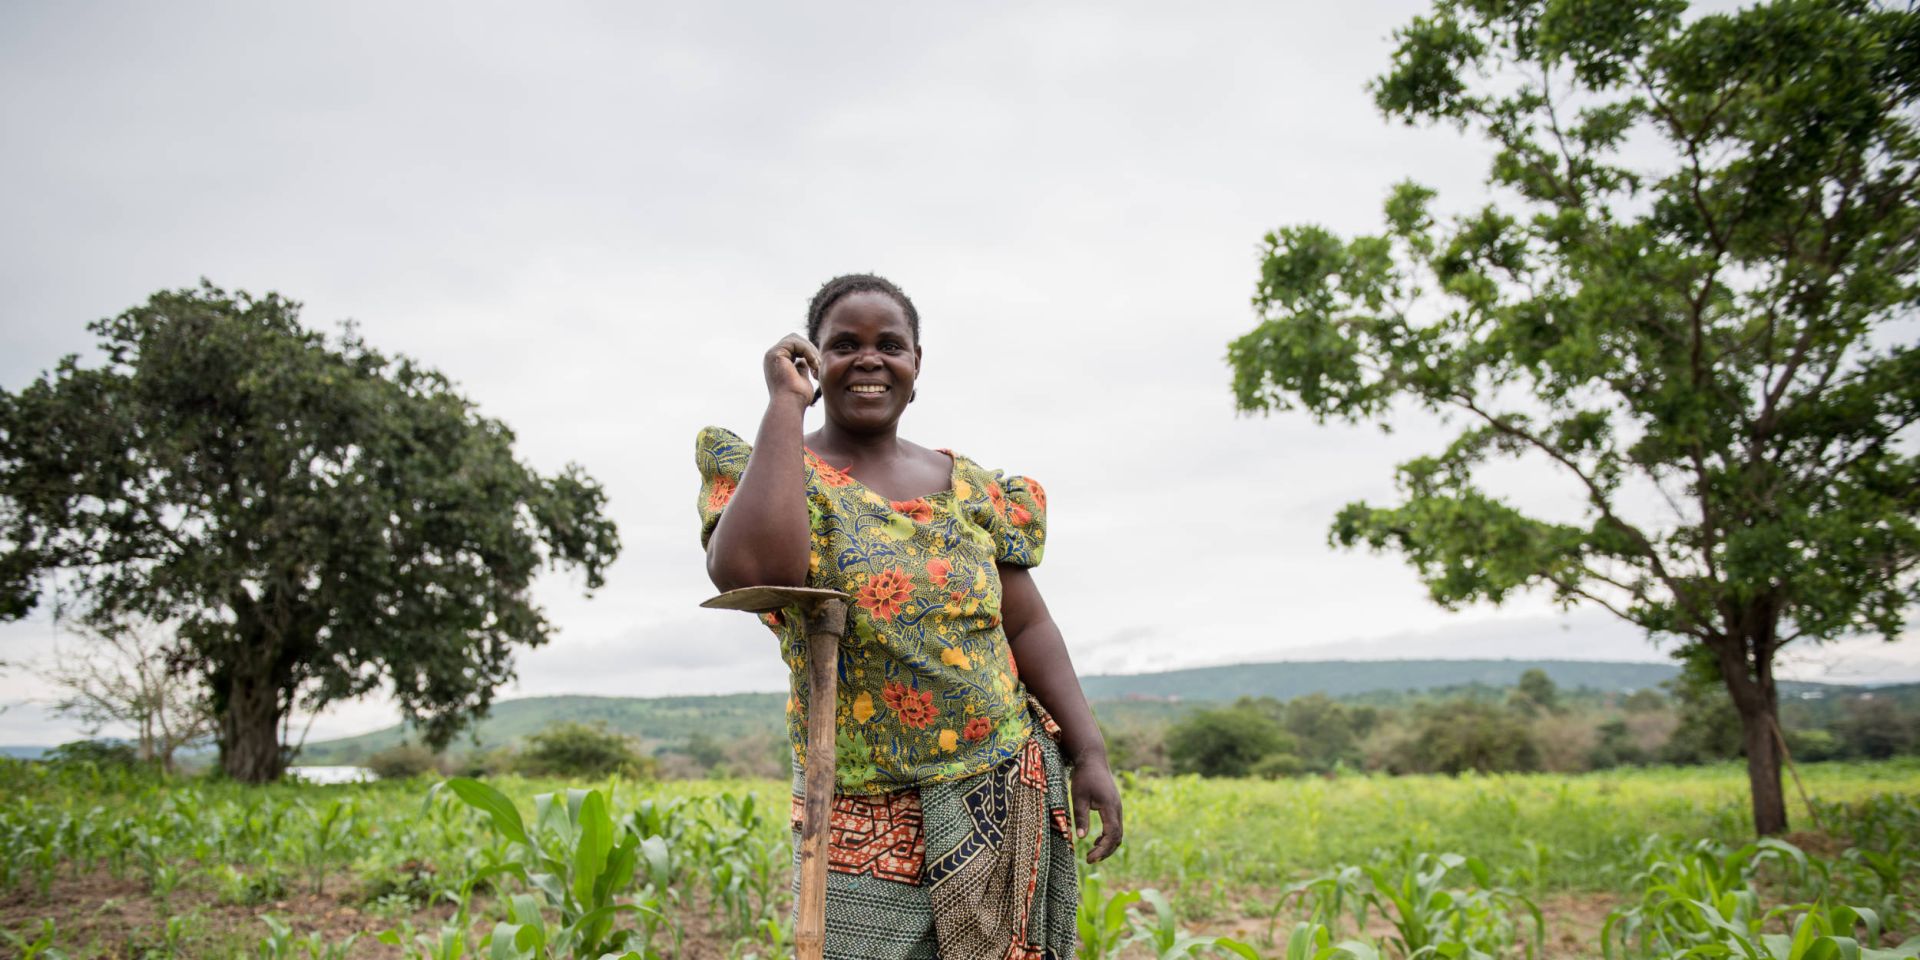 A woman farmer posing in her field full of crops